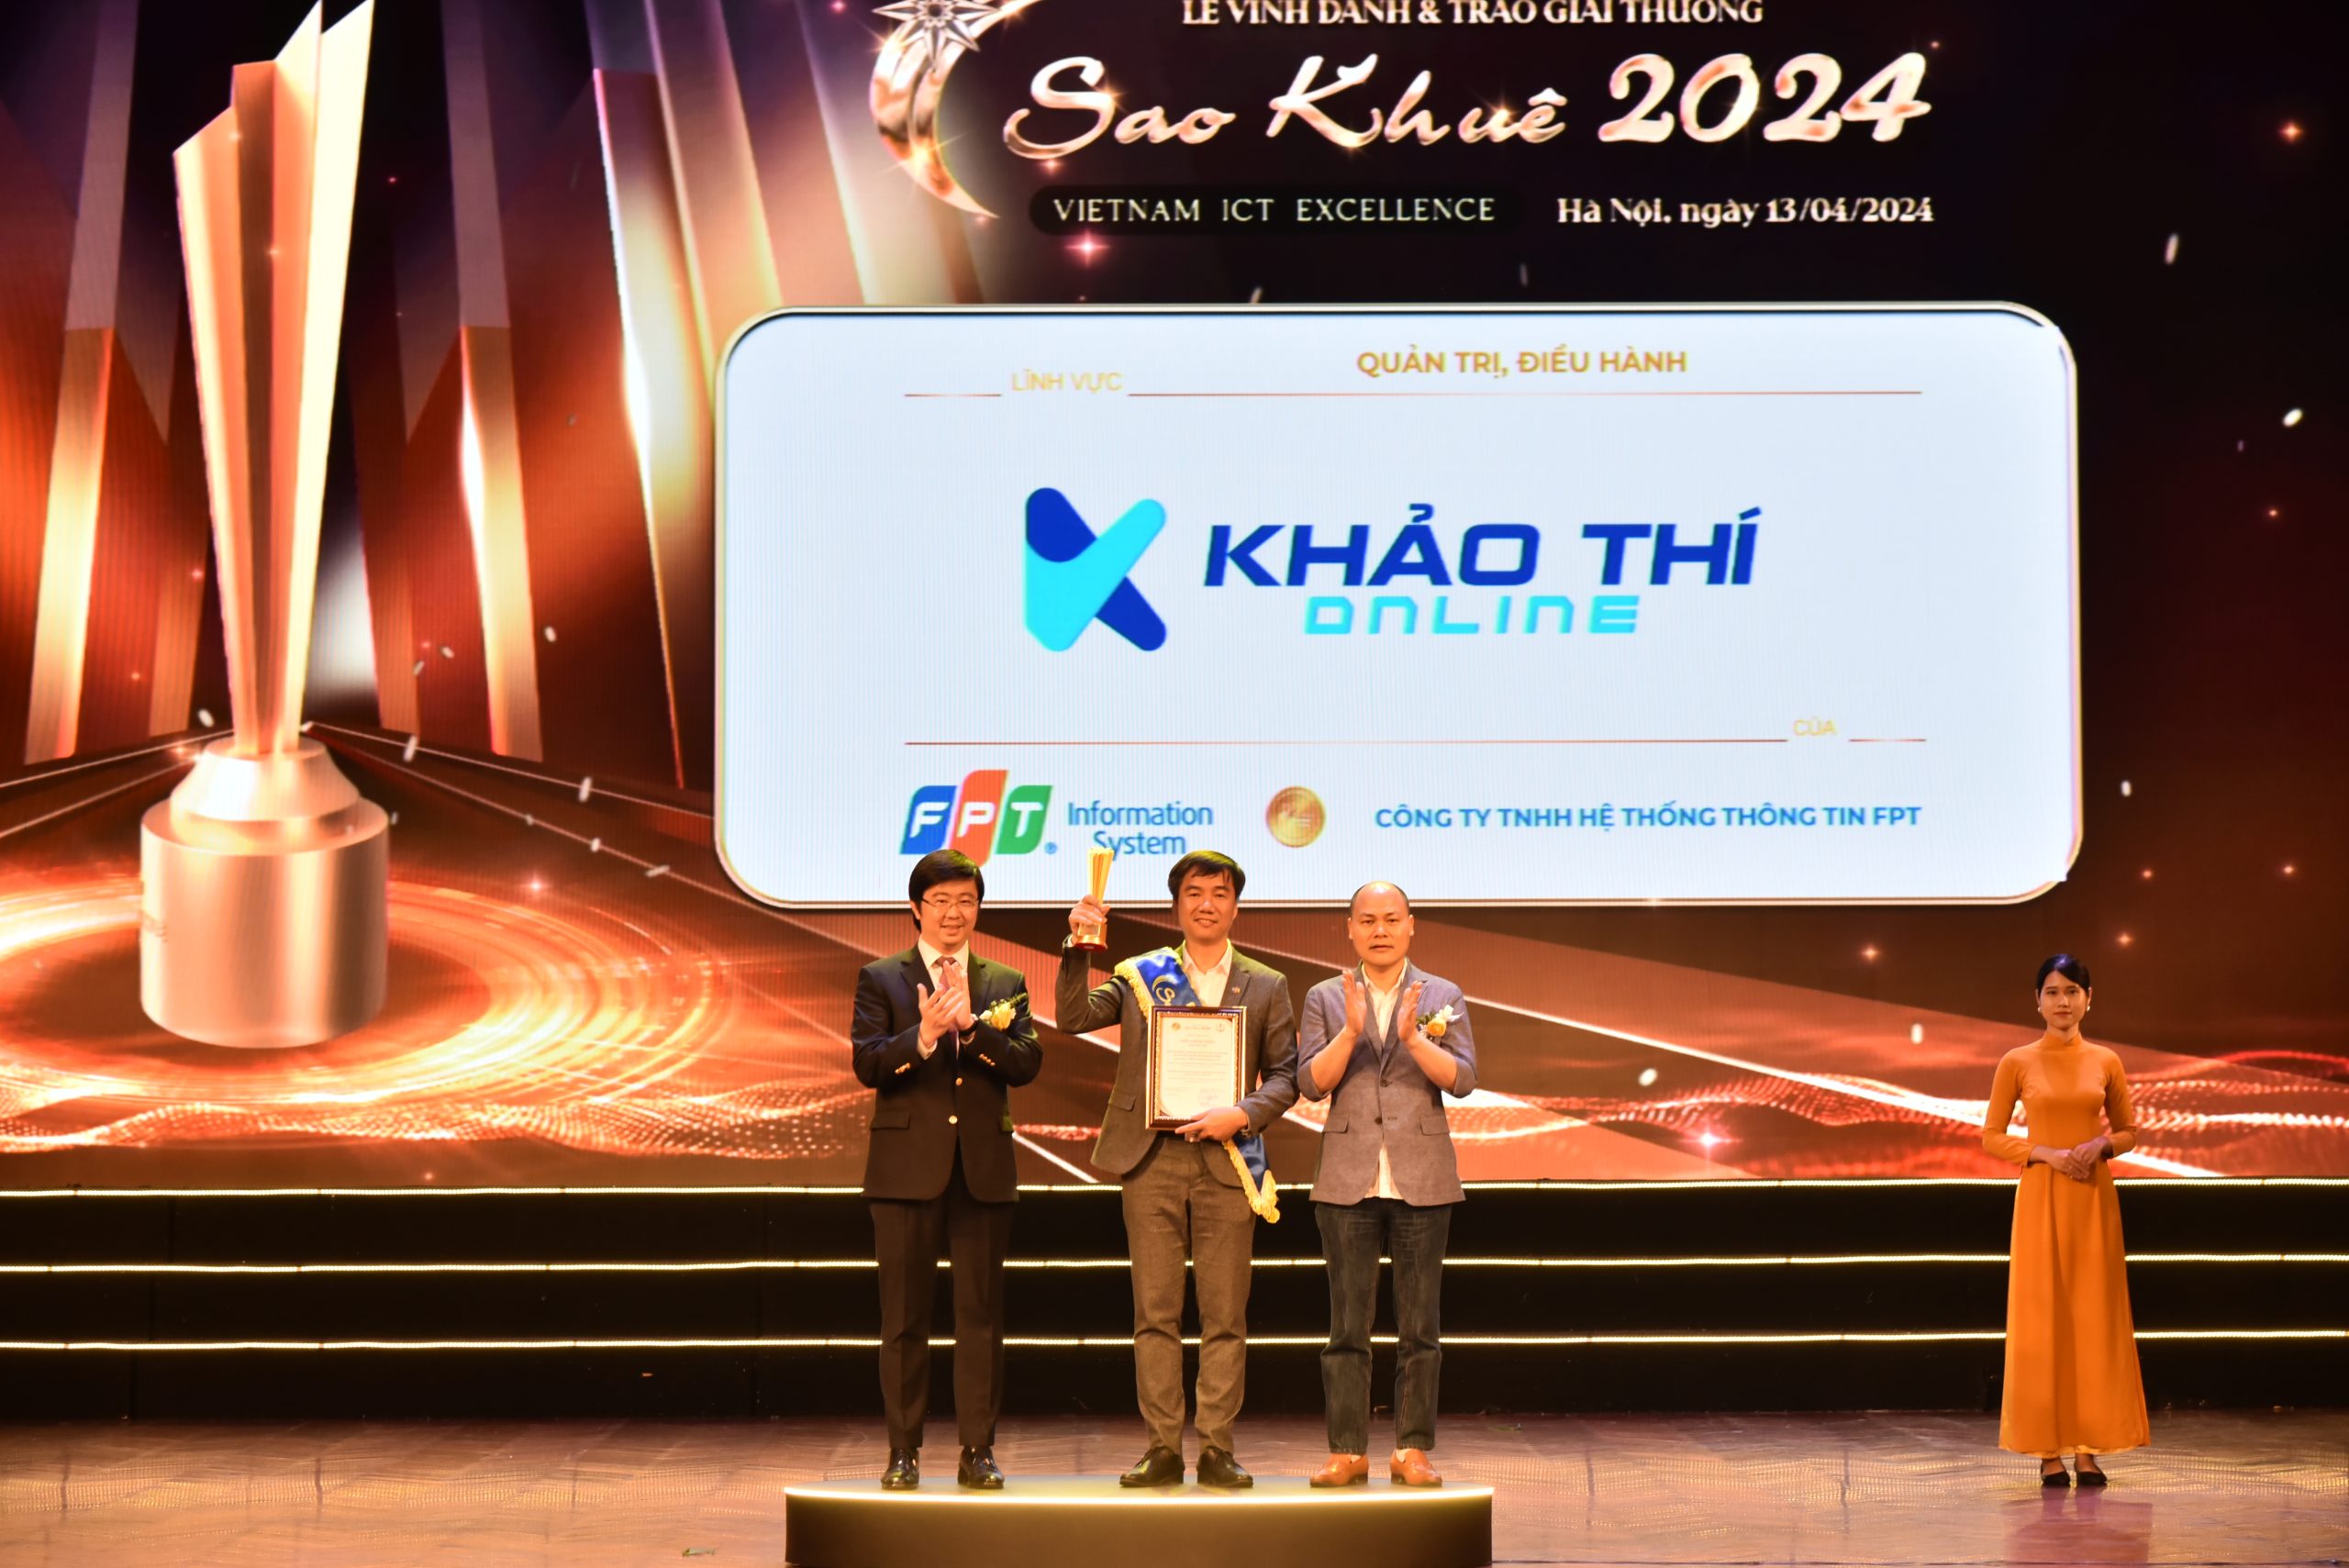 Phần mềm kiểm tra đánh giá quá trình ở bậc học phổ thông trên nền tảng cung cấp dịch vụ Khaothi.Online đạt Giải thưởng Sao Khuê 2024